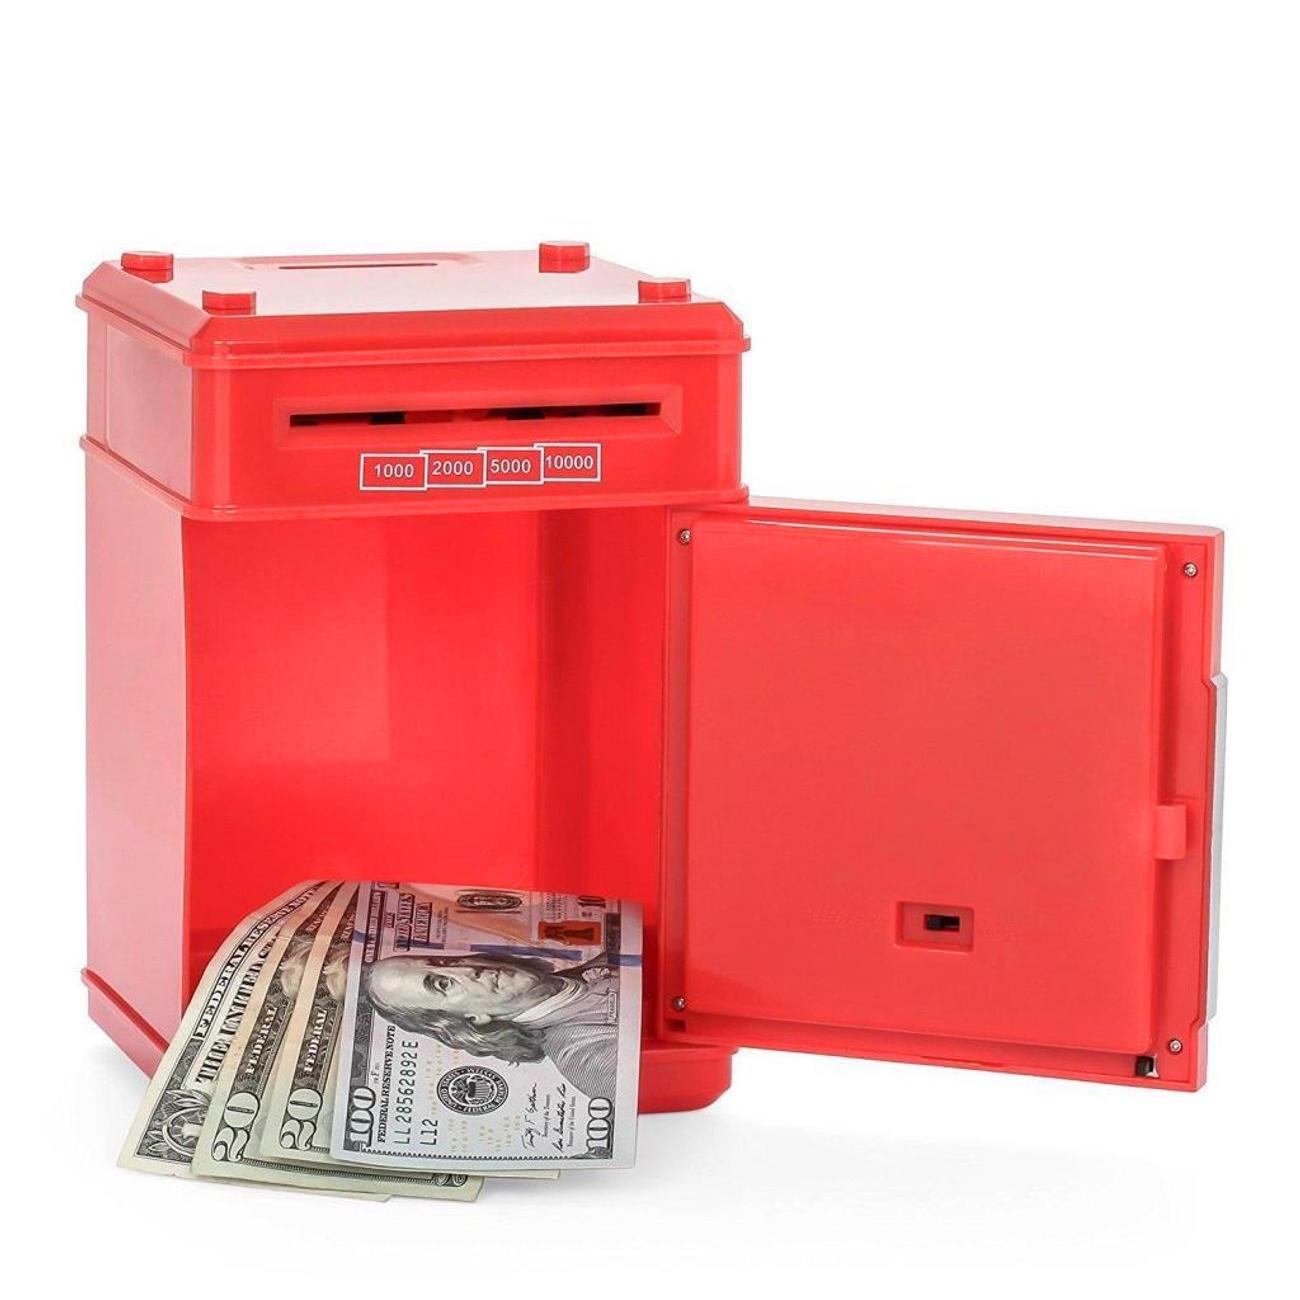 Фото 1 Игрушечный сейф копилка музыкальная с электронным купюроприемником UFT Cashbox Red